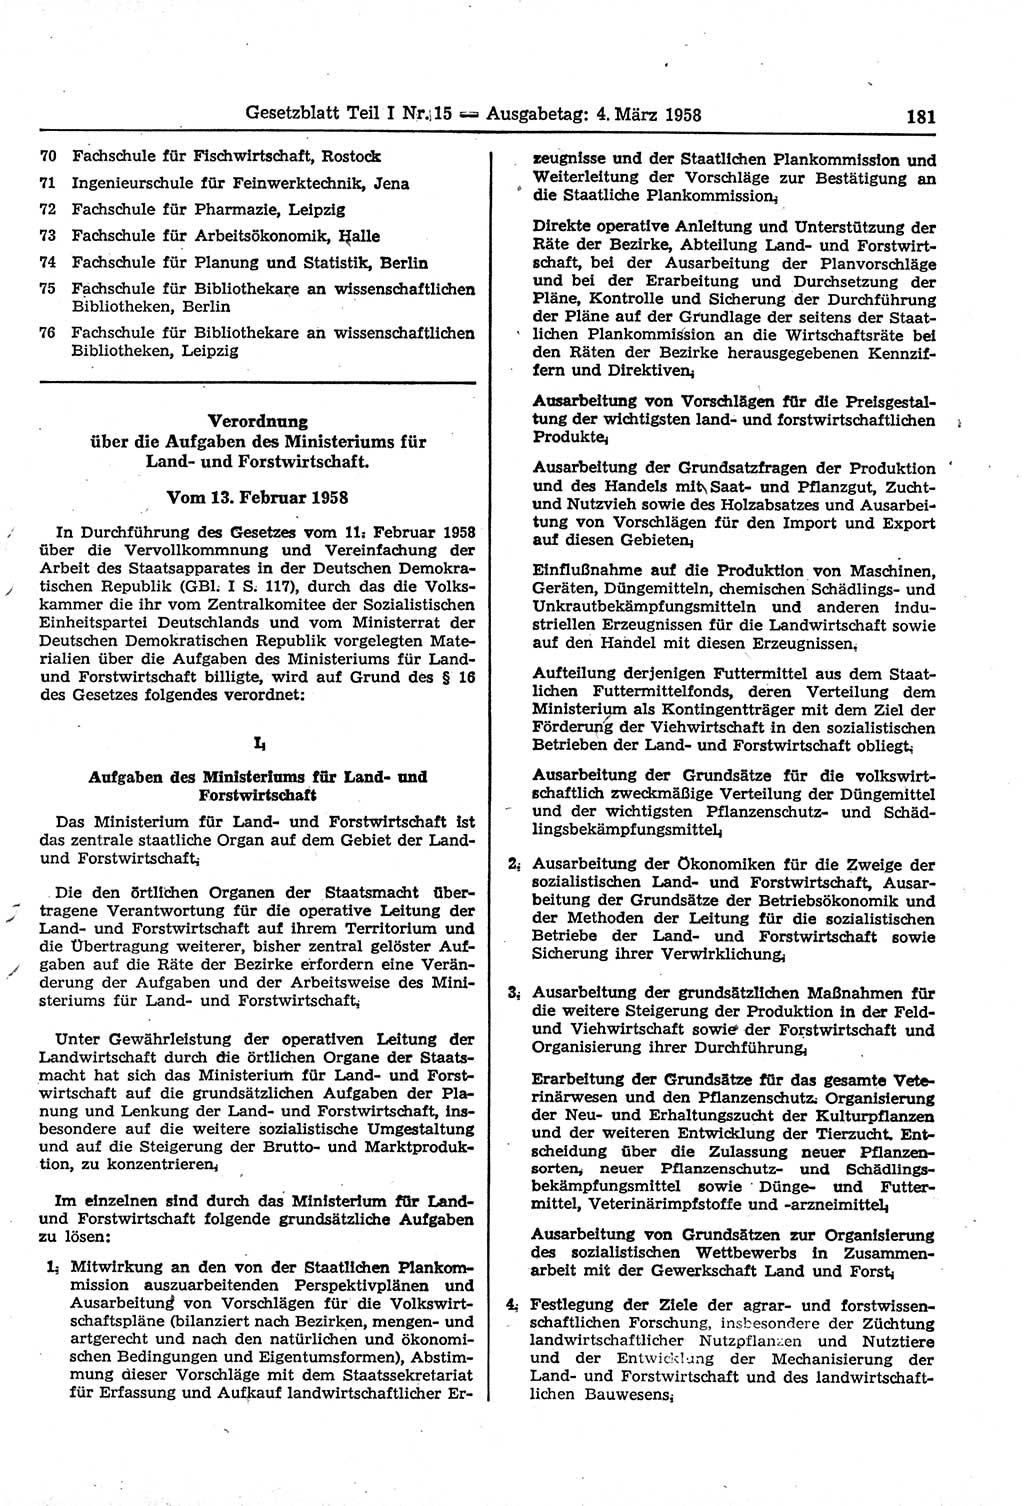 Gesetzblatt (GBl.) der Deutschen Demokratischen Republik (DDR) Teil Ⅰ 1958, Seite 181 (GBl. DDR Ⅰ 1958, S. 181)